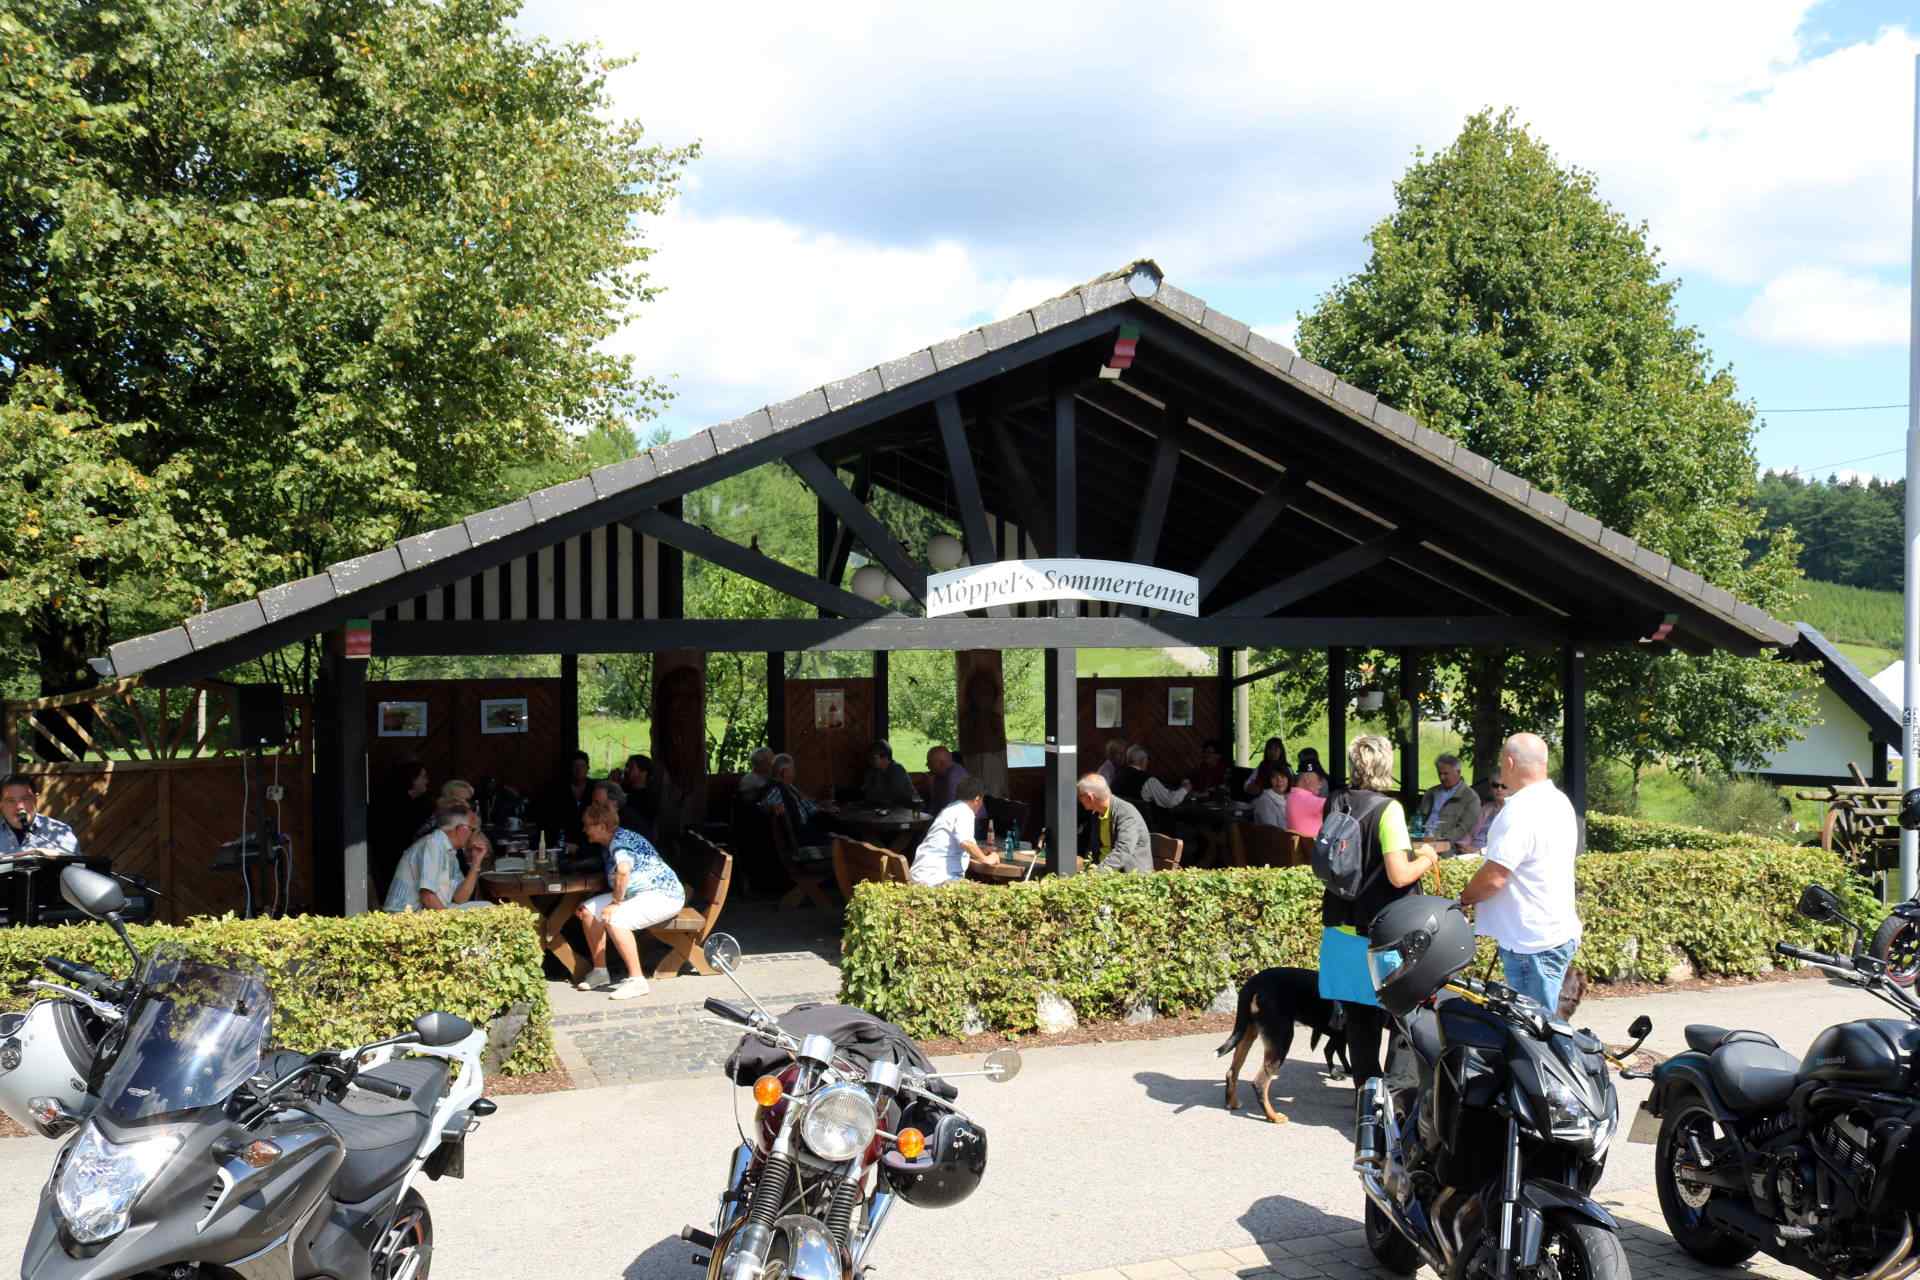 Möppels Sommertenne - Rastplatz für Wanderer, Radfahrer und Biker. Bild: altais.de